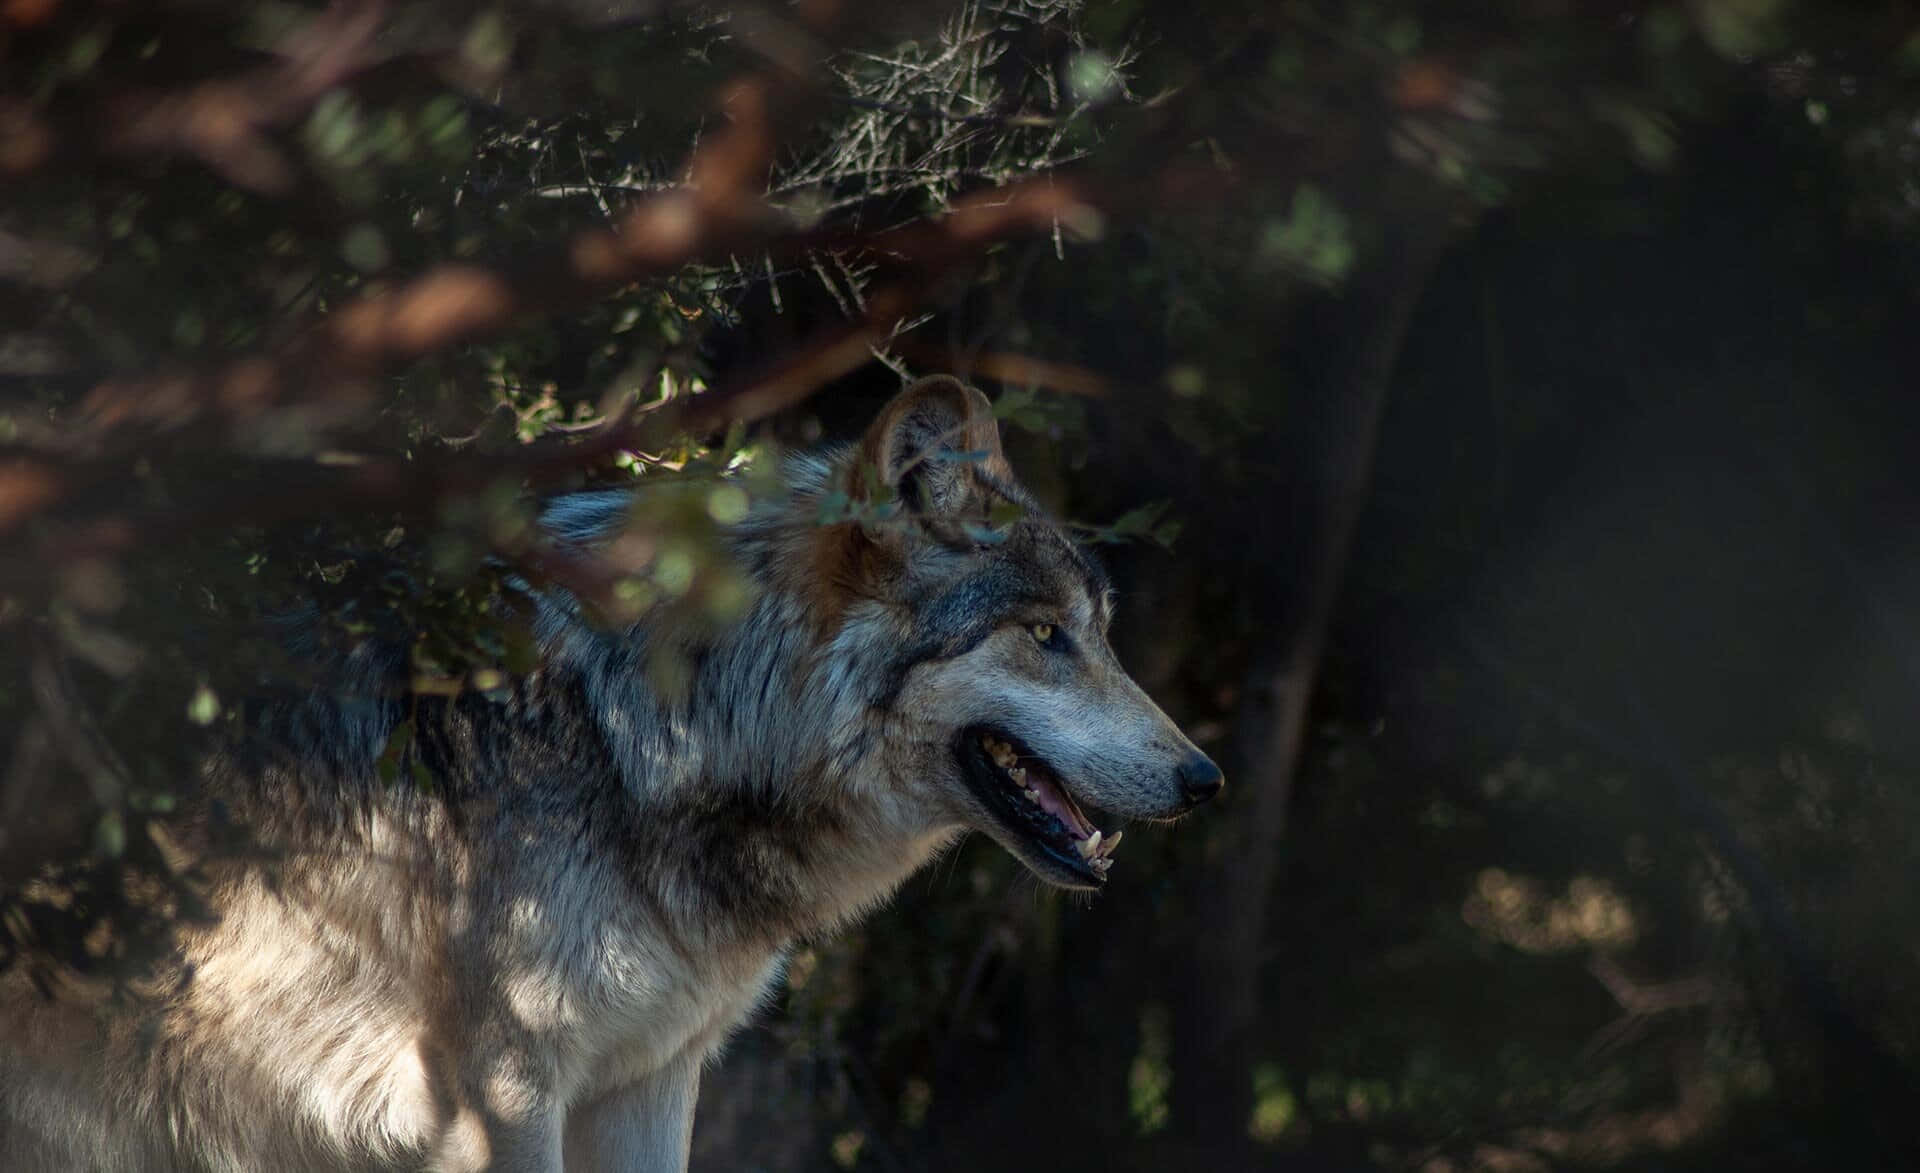 Umgrupo De Lobos Percorre Seu Habitat Natural.